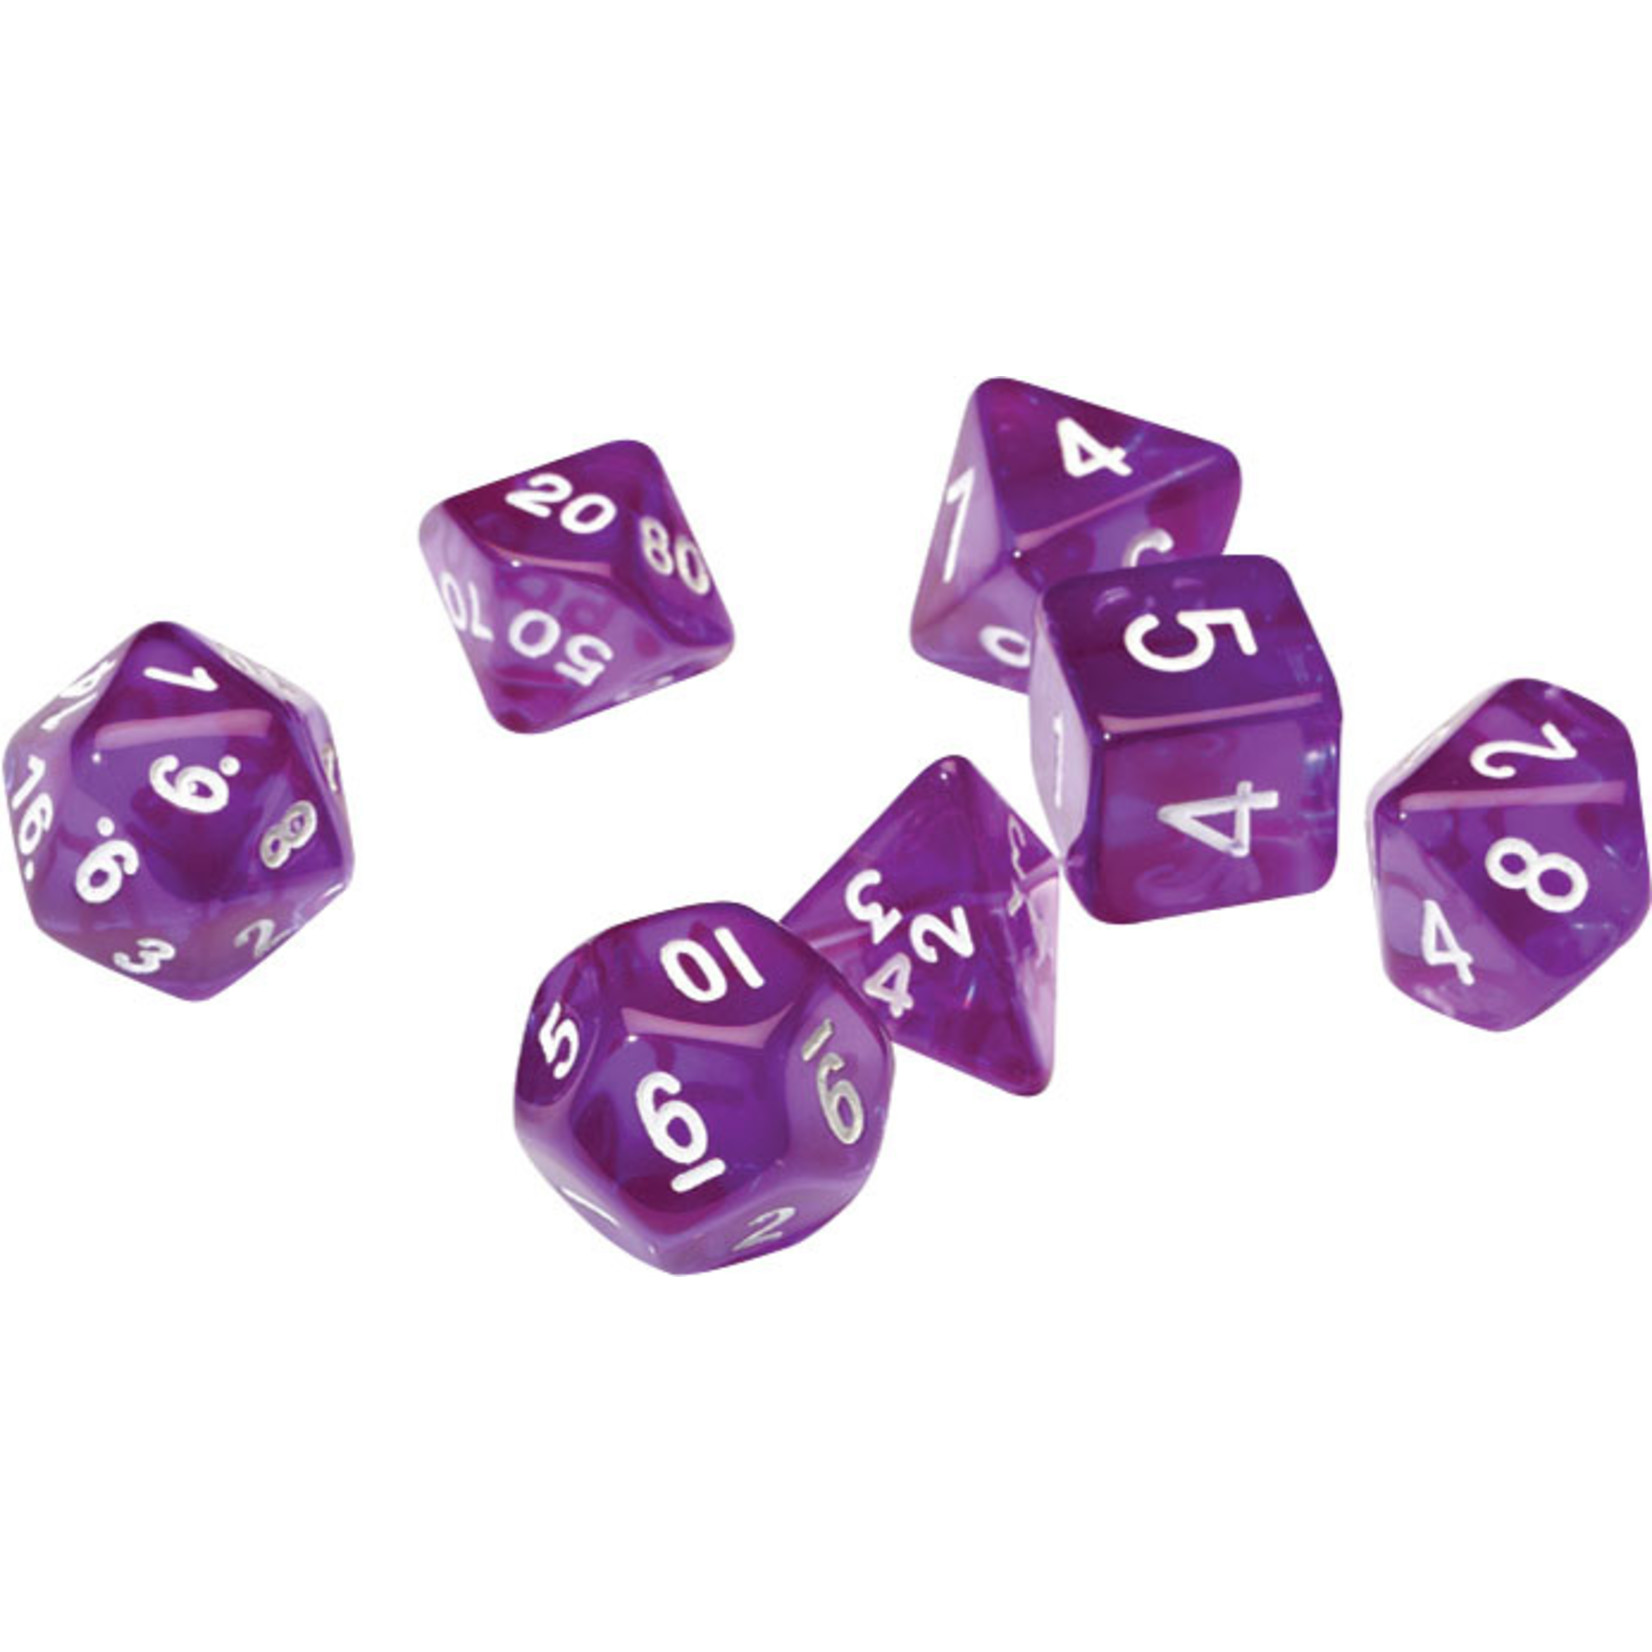 Sirius Dice RPG Dice Set (7): Translucent Purple Resin